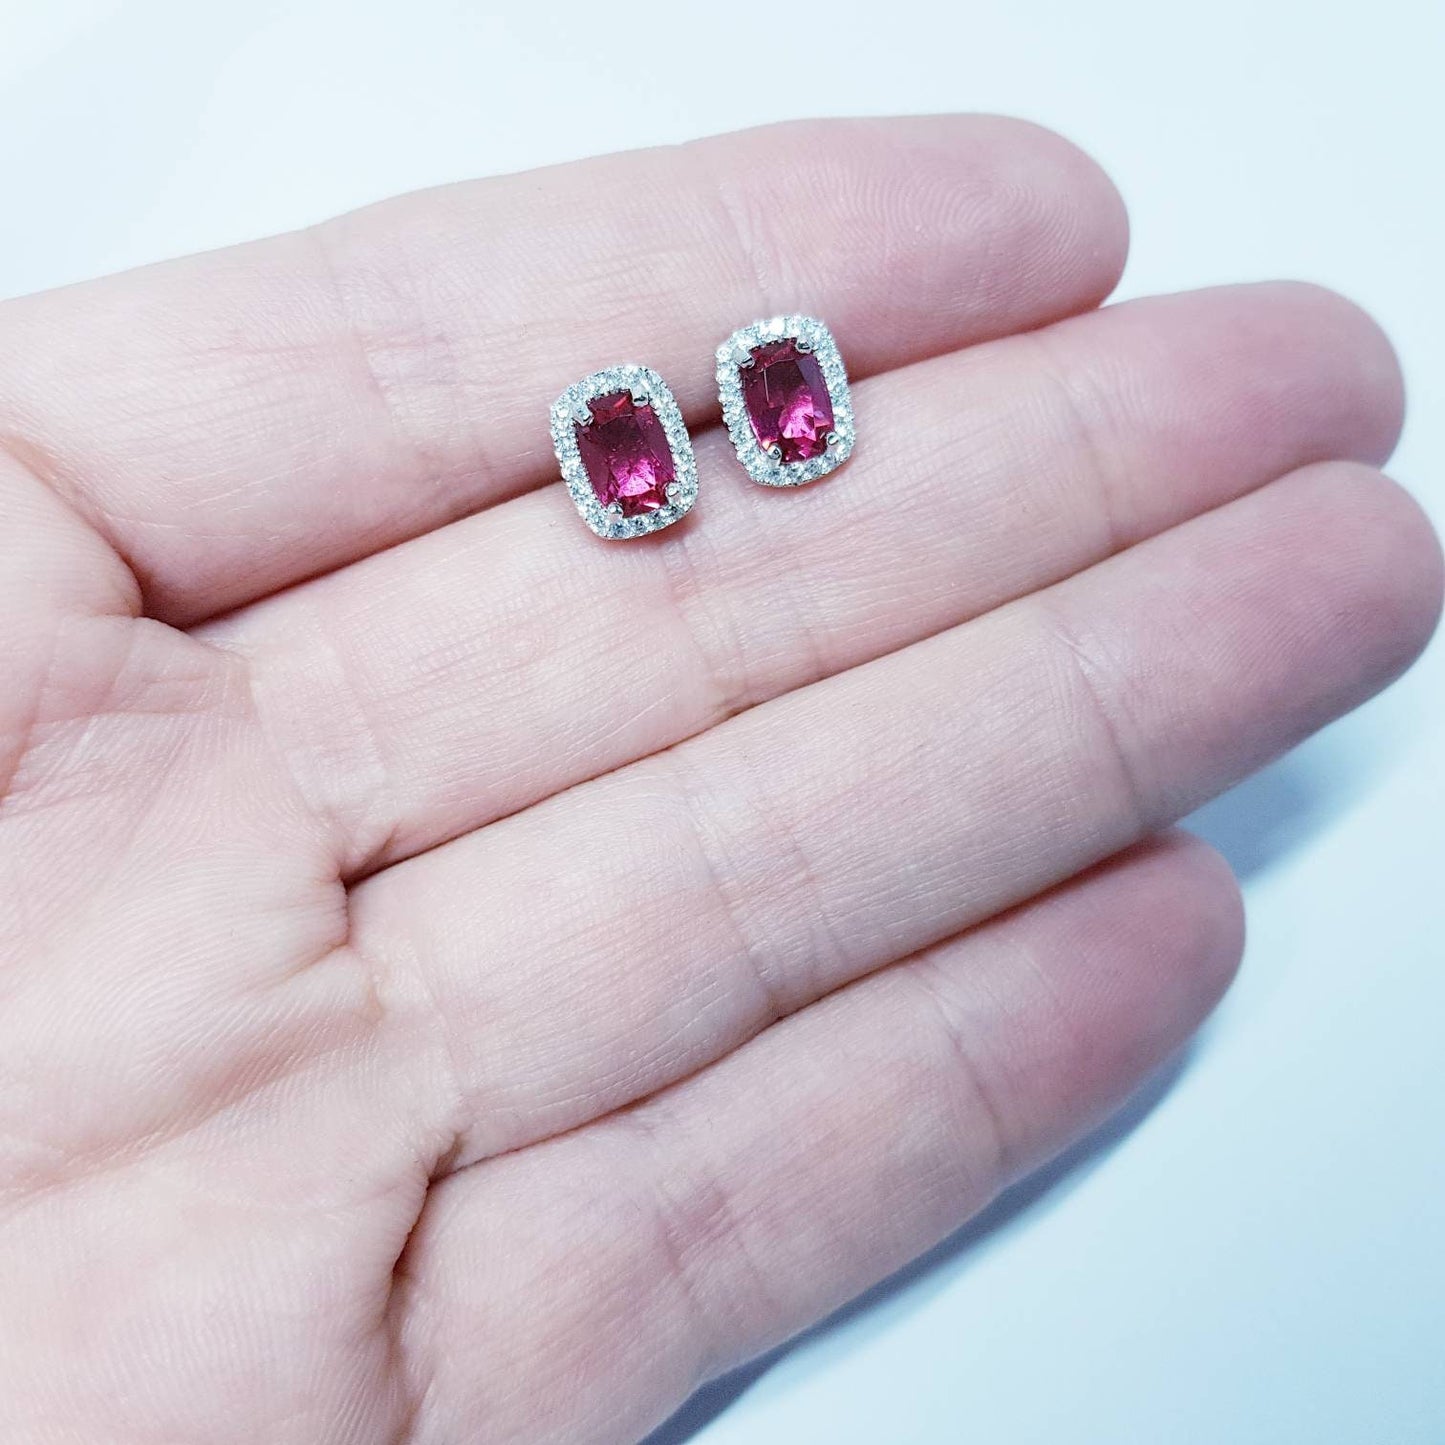 Red earrings, ruby stud earrings, July birthstone, vintage earrings, diamond halo earrings, earrings for women, classic stud earrings